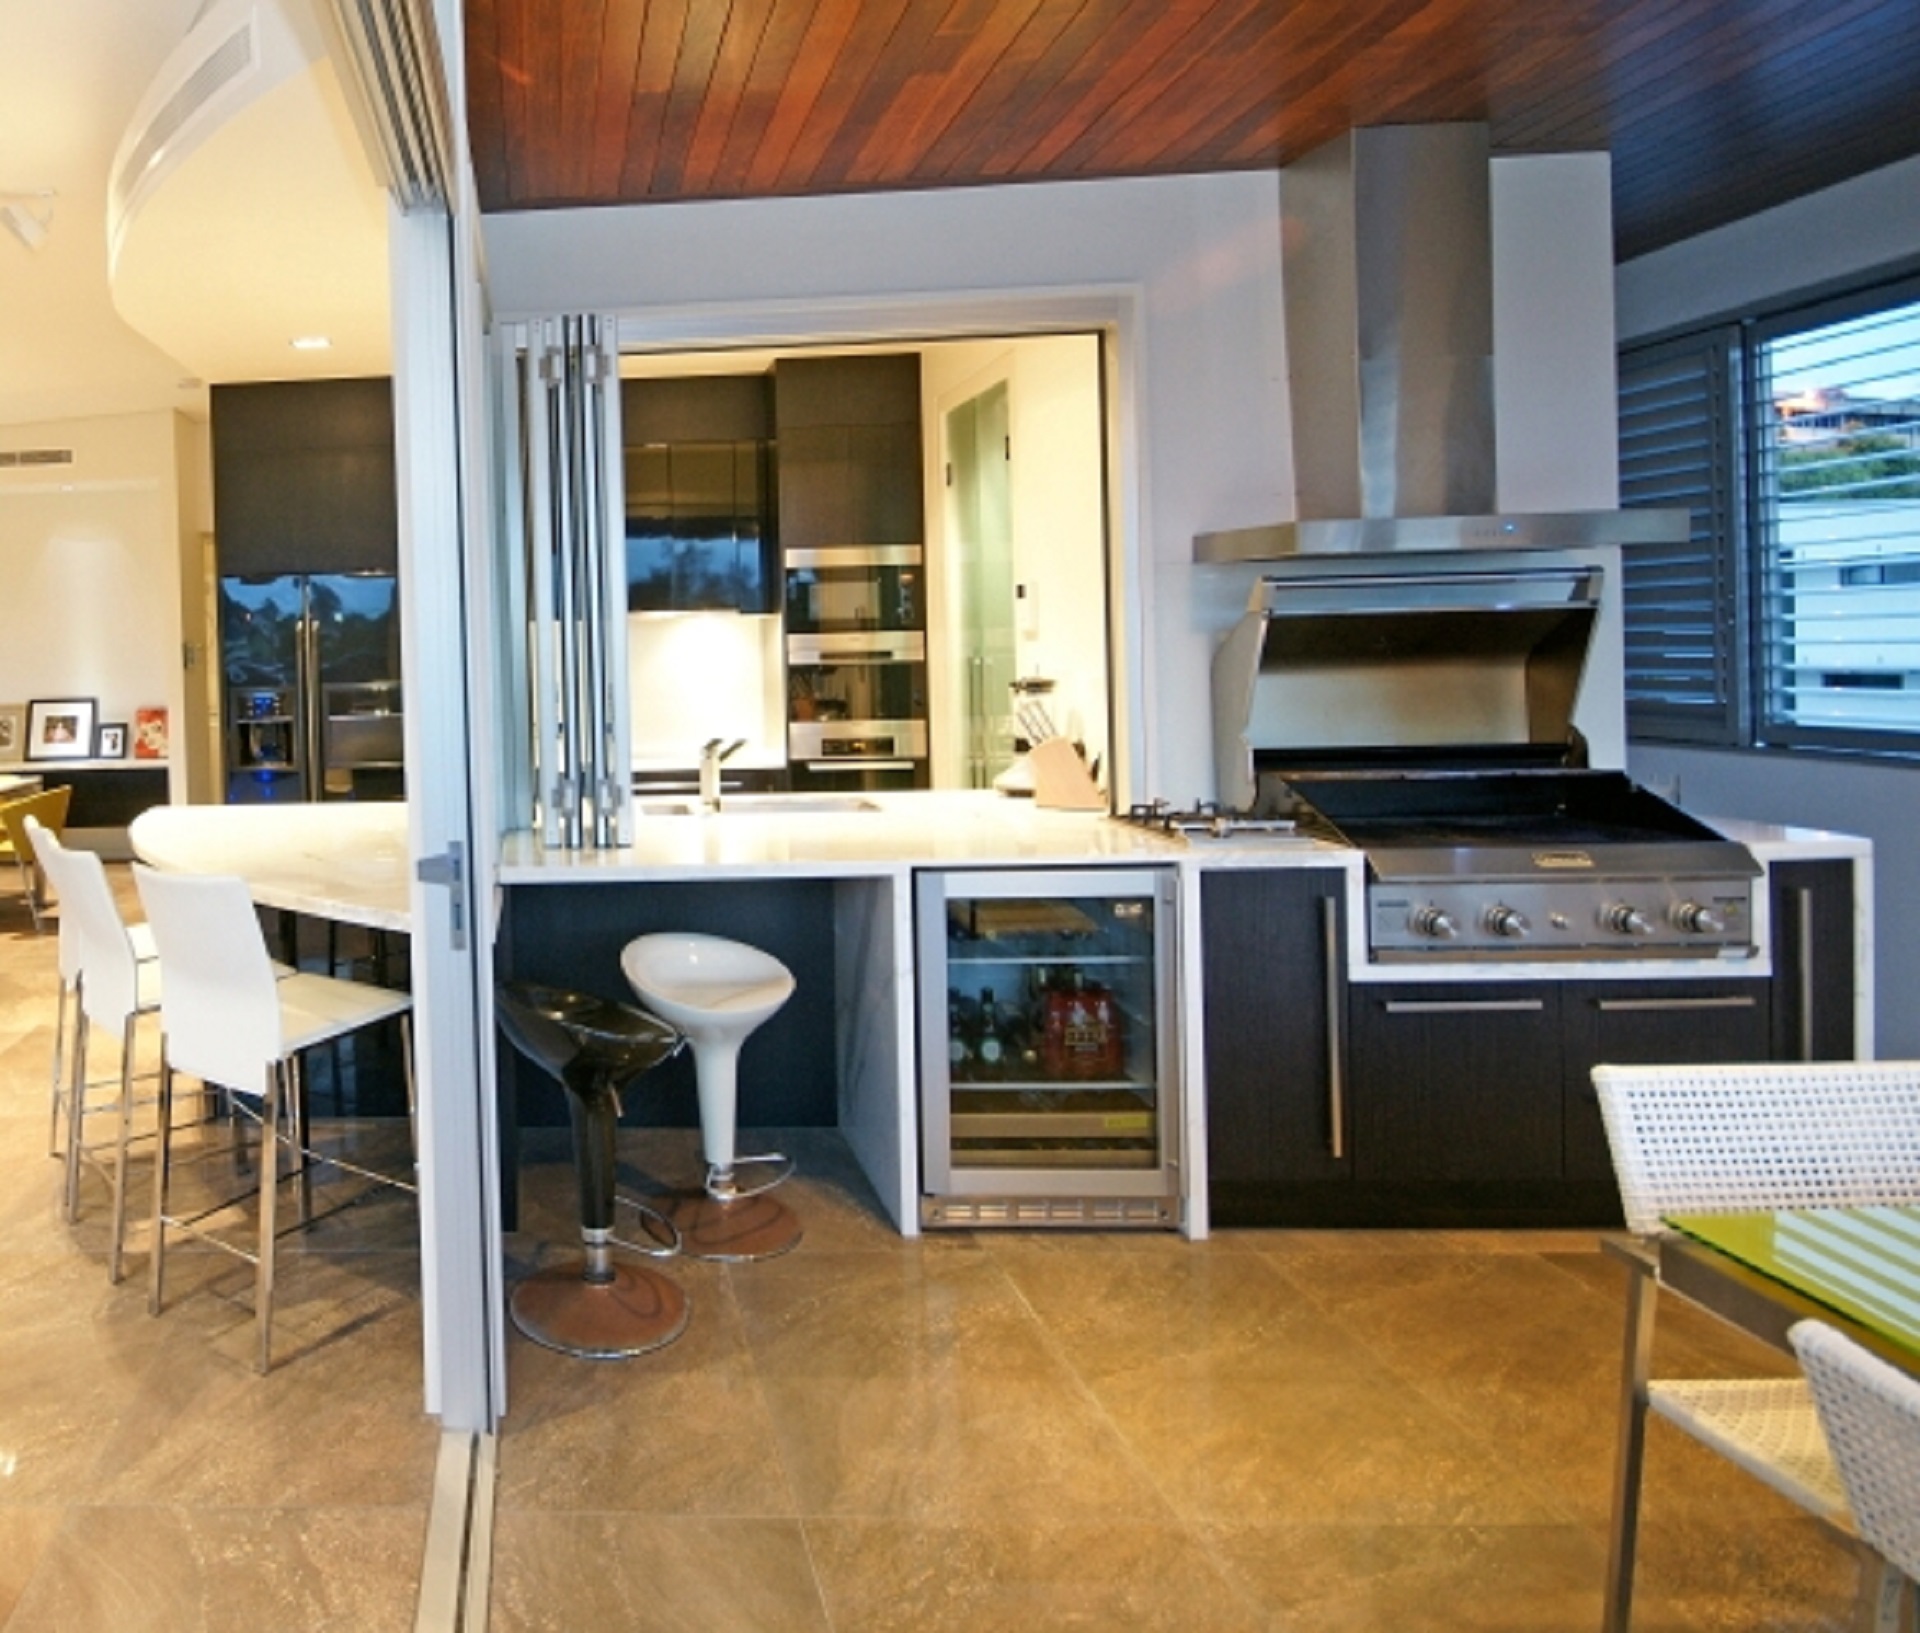 Brisbane Kitchen Design Black 2 Pac with Carrara Marble Benchtop3